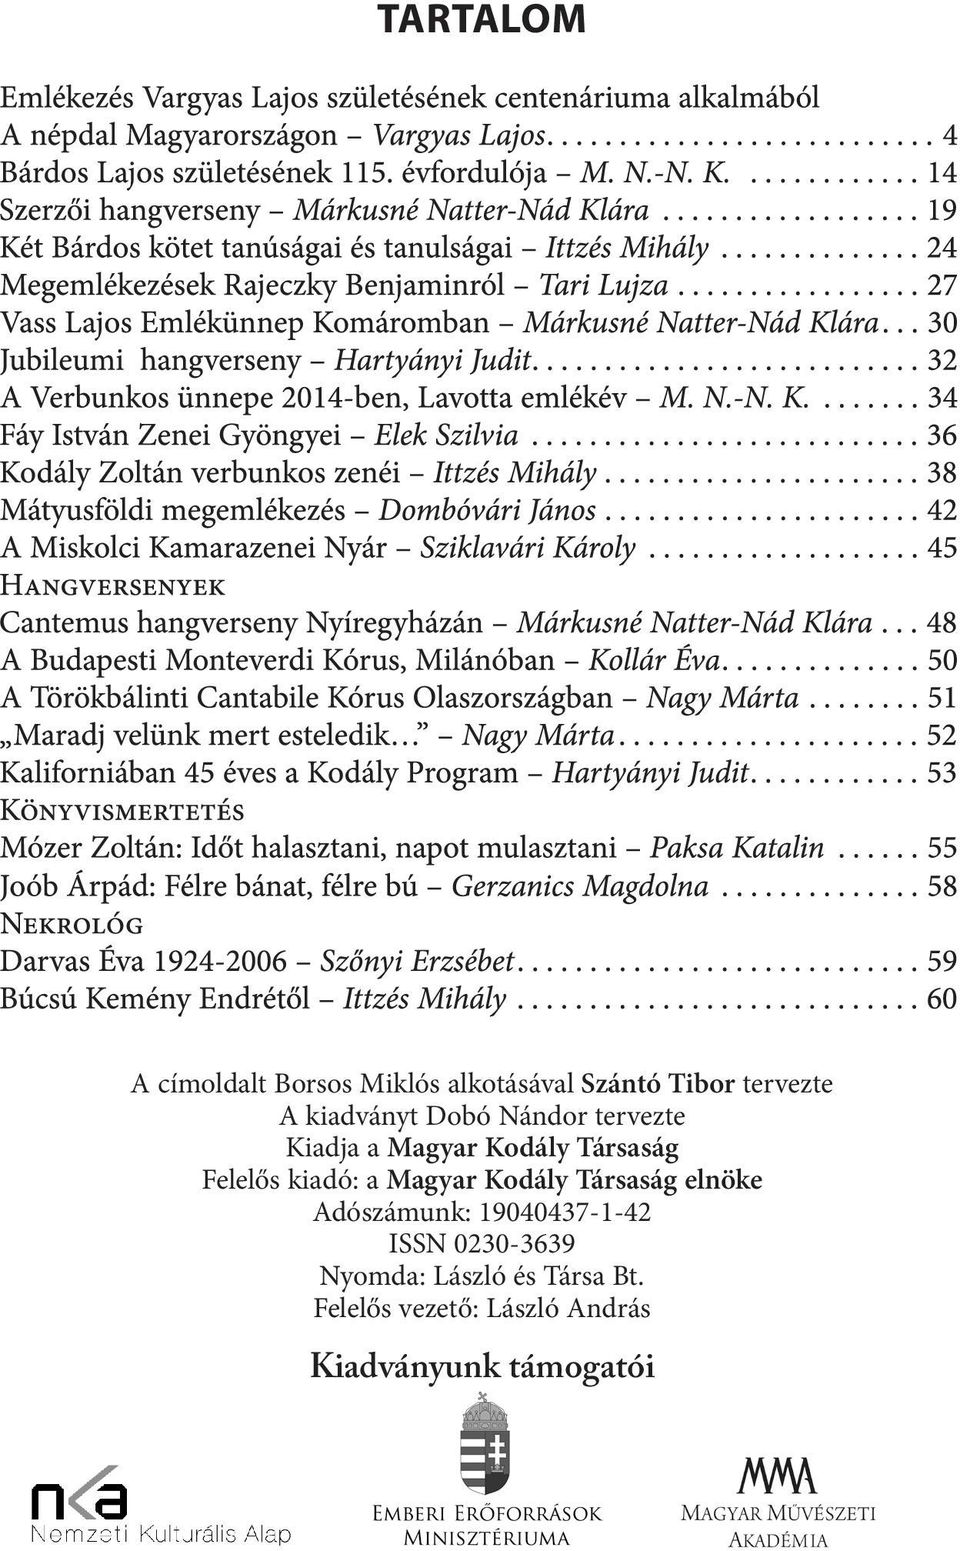 kiadó: a Magyar Kodály Társaság elnöke Adószámunk: 19040437-1-42 ISSN